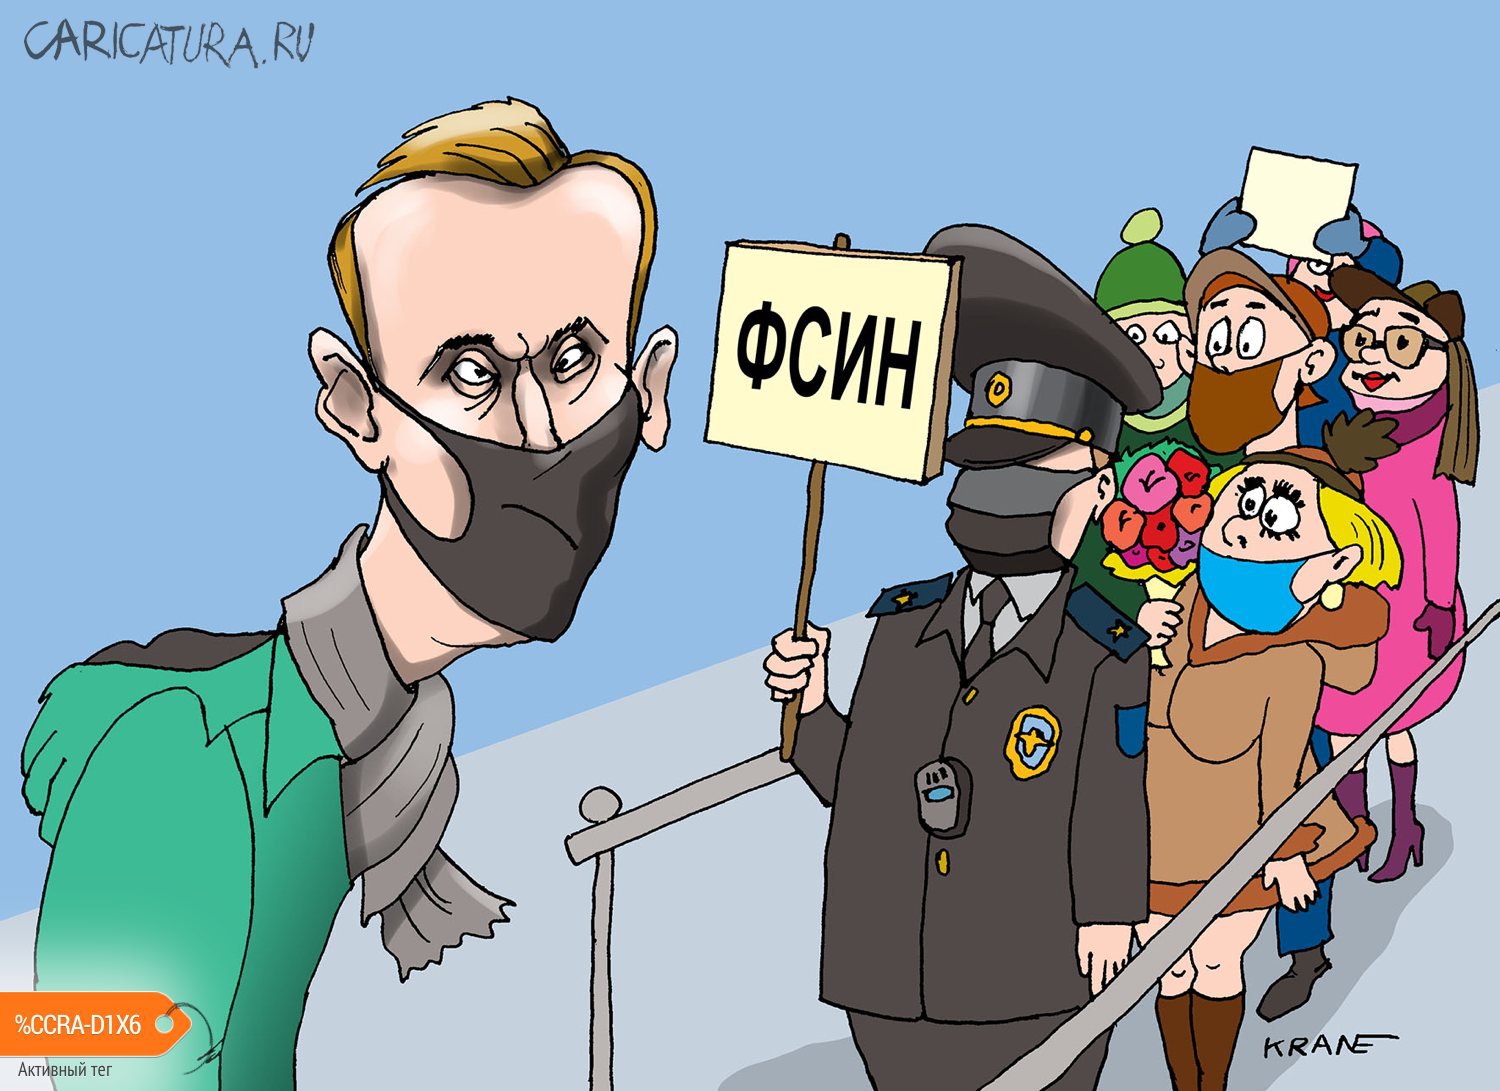 Карикатура "К нам приехал! К нам приехал!", Евгений Кран